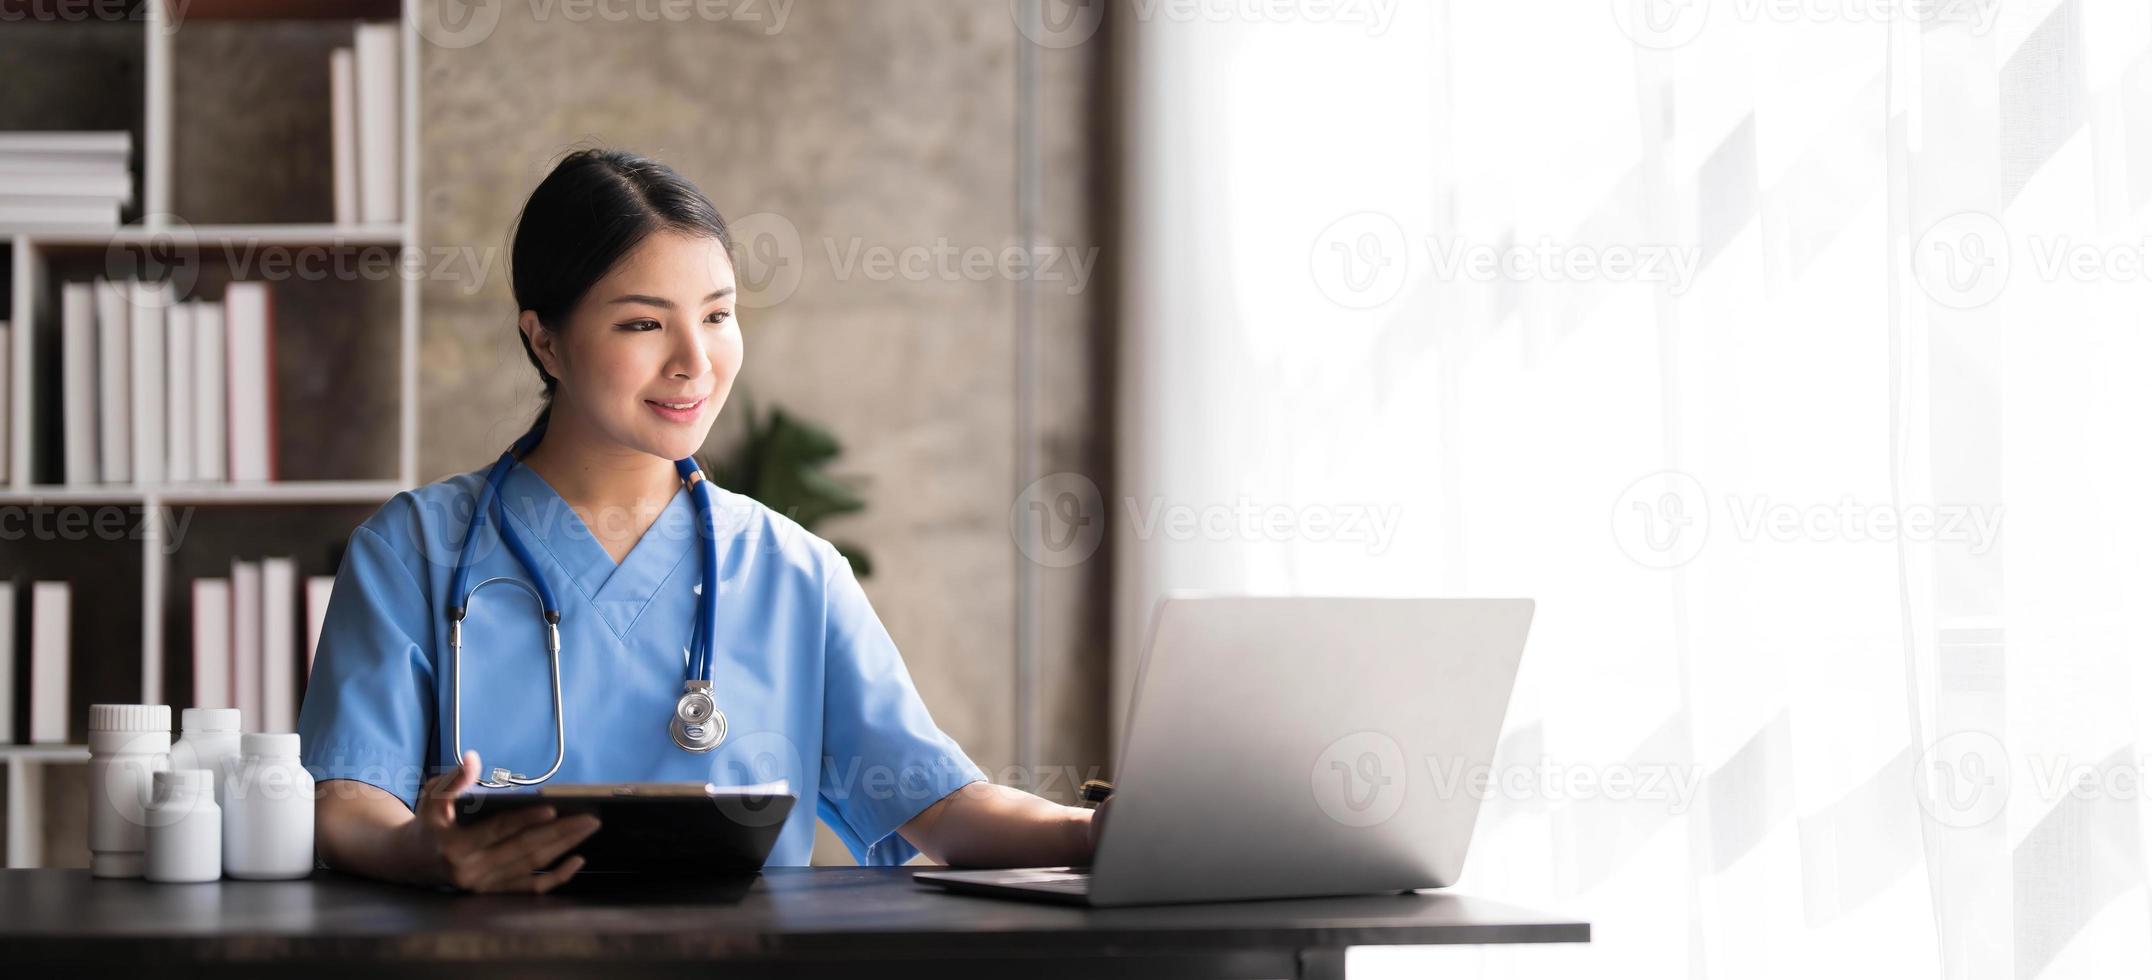 jovem médica asiática bonita sorrindo usando o trabalho com um computador portátil e ela escrevendo algo na papelada ou na prancheta papel branco no escritório da mesa do hospital, conceito médico de saúde foto